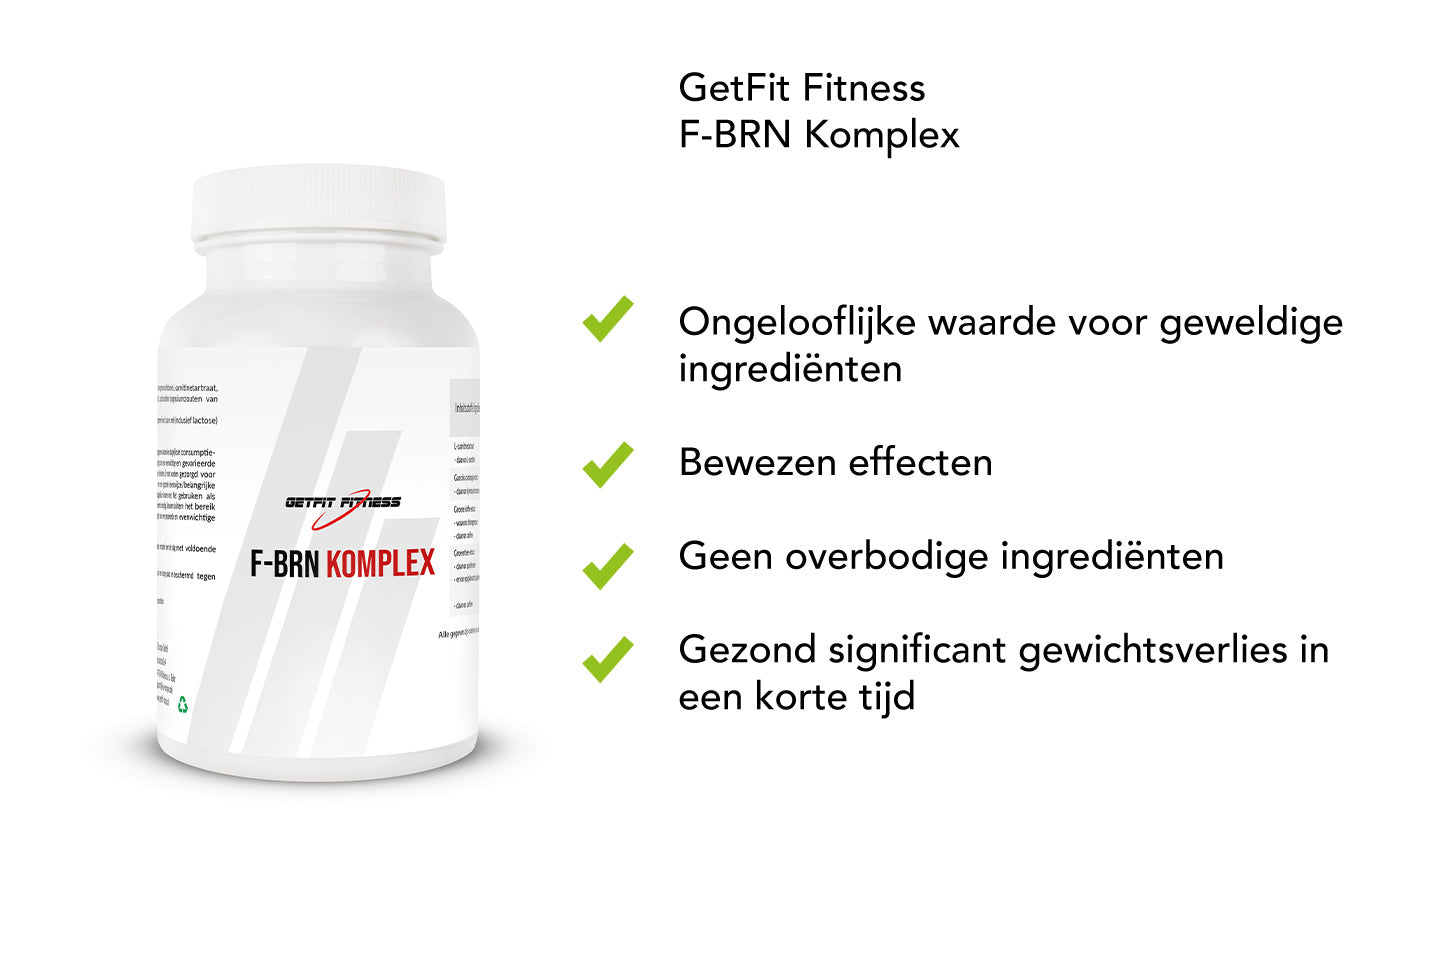 GetFit Fitness F-BRN Komplex